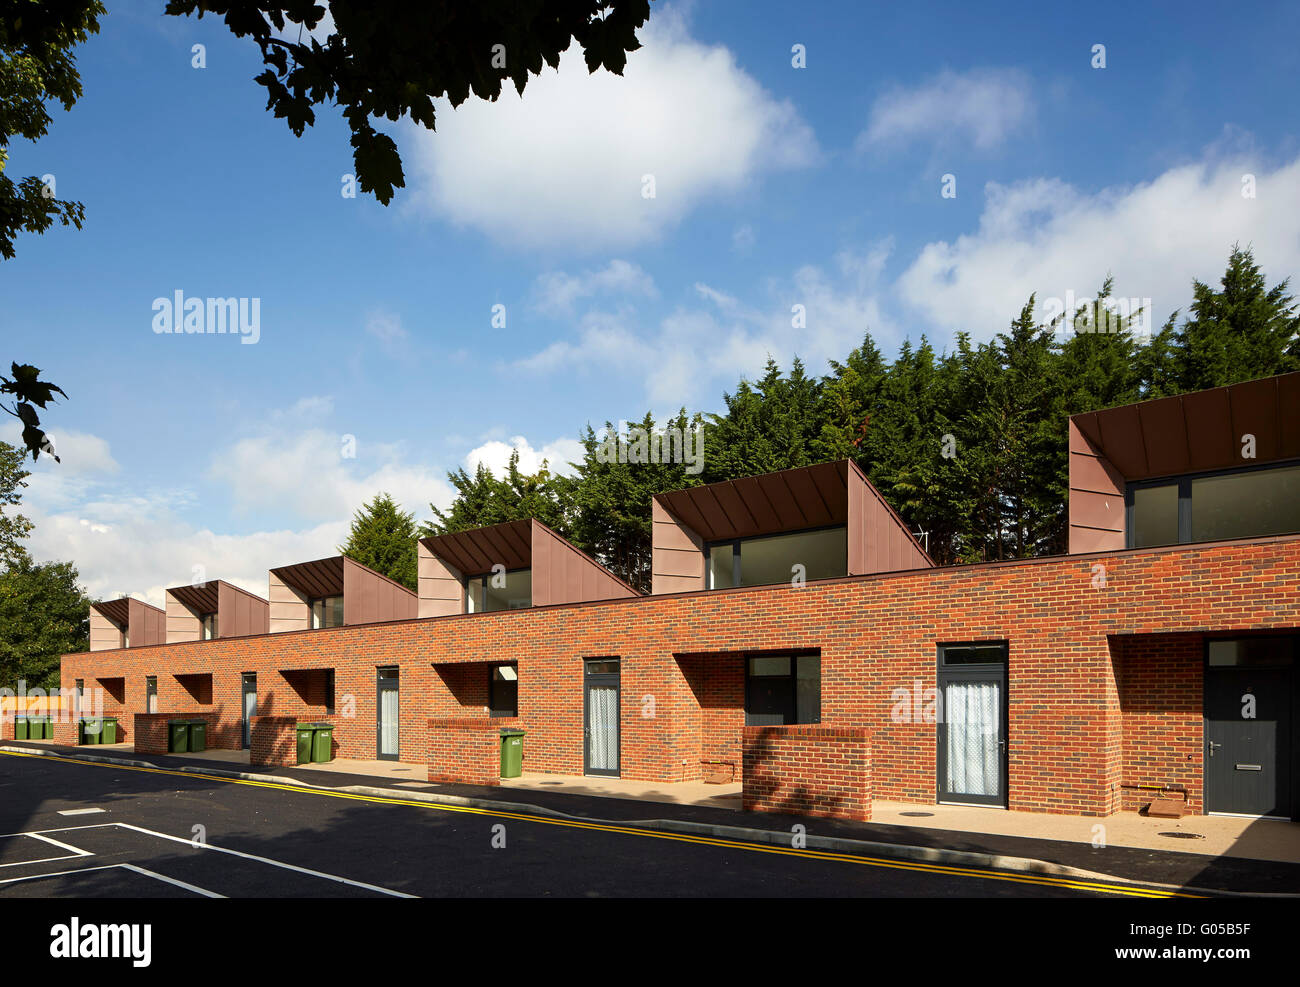 Large vue présentant 6 nouvelles unités. Logement de Greenwich, Greenwich, Royaume-Uni. Architecte : Bell Phillips architectes, 2016. Banque D'Images